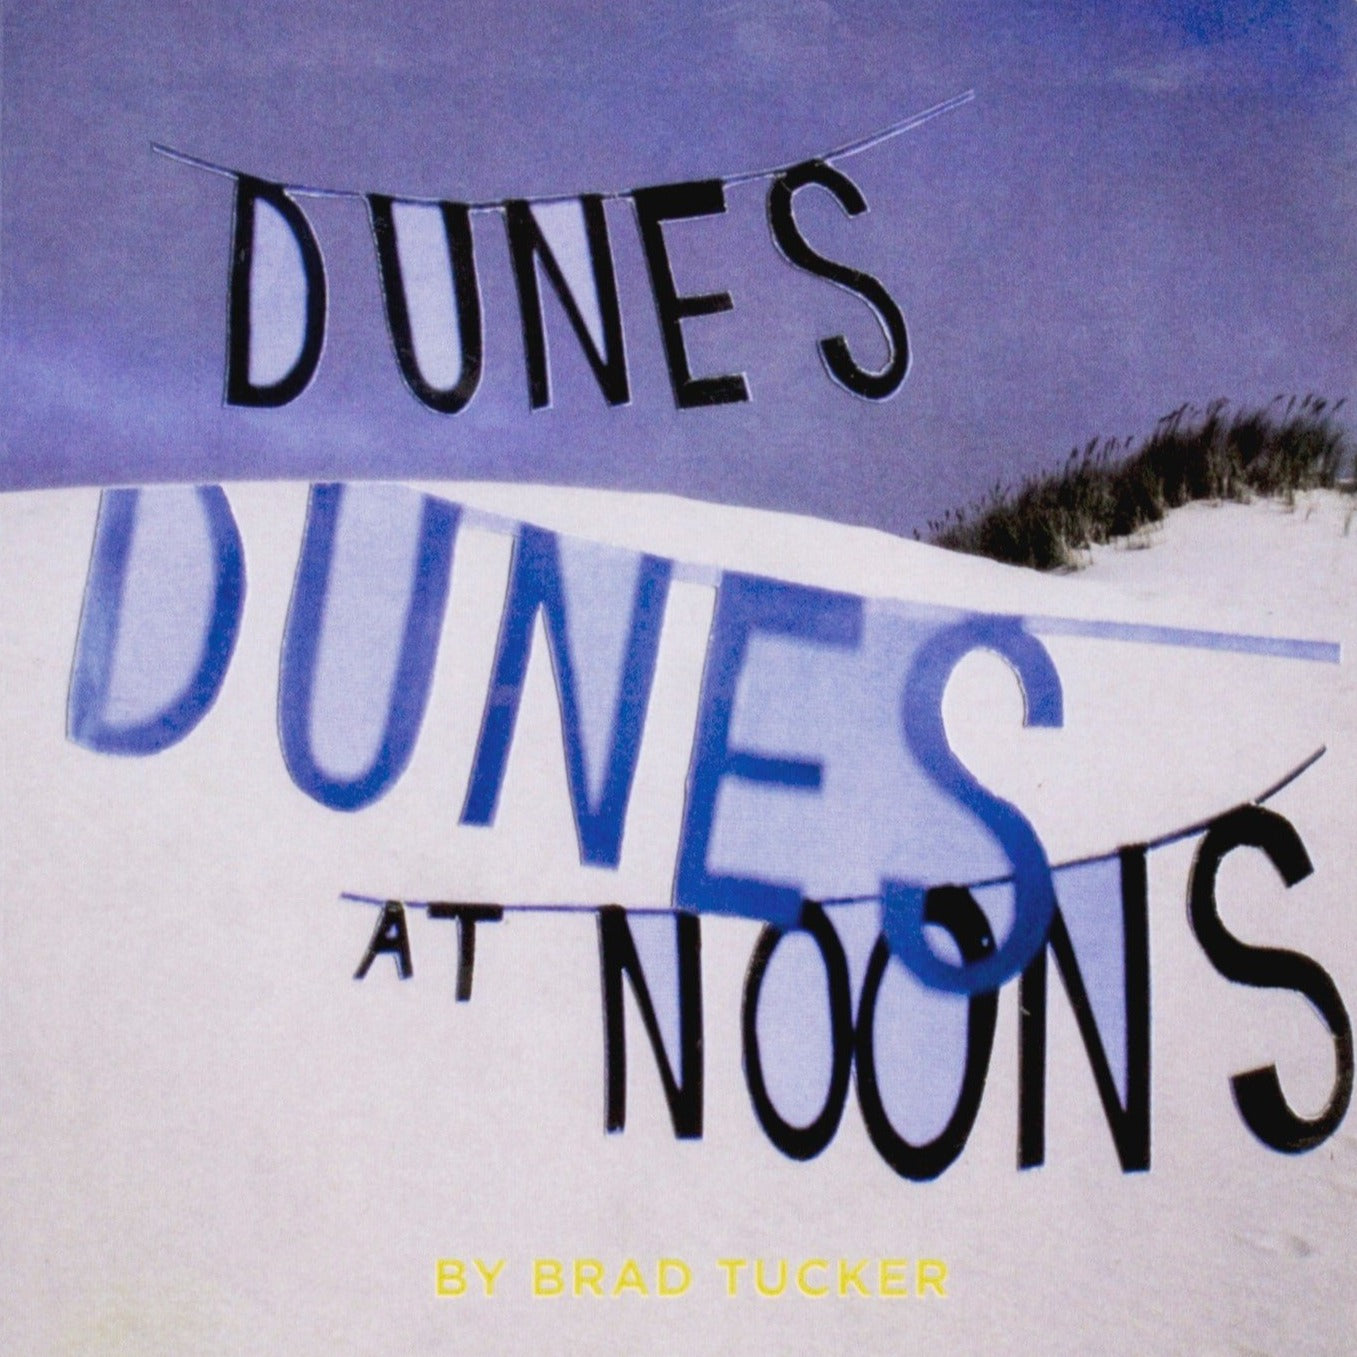 Dunes at Noons by Brad Tucker - Book at Kavi Gupta Editions